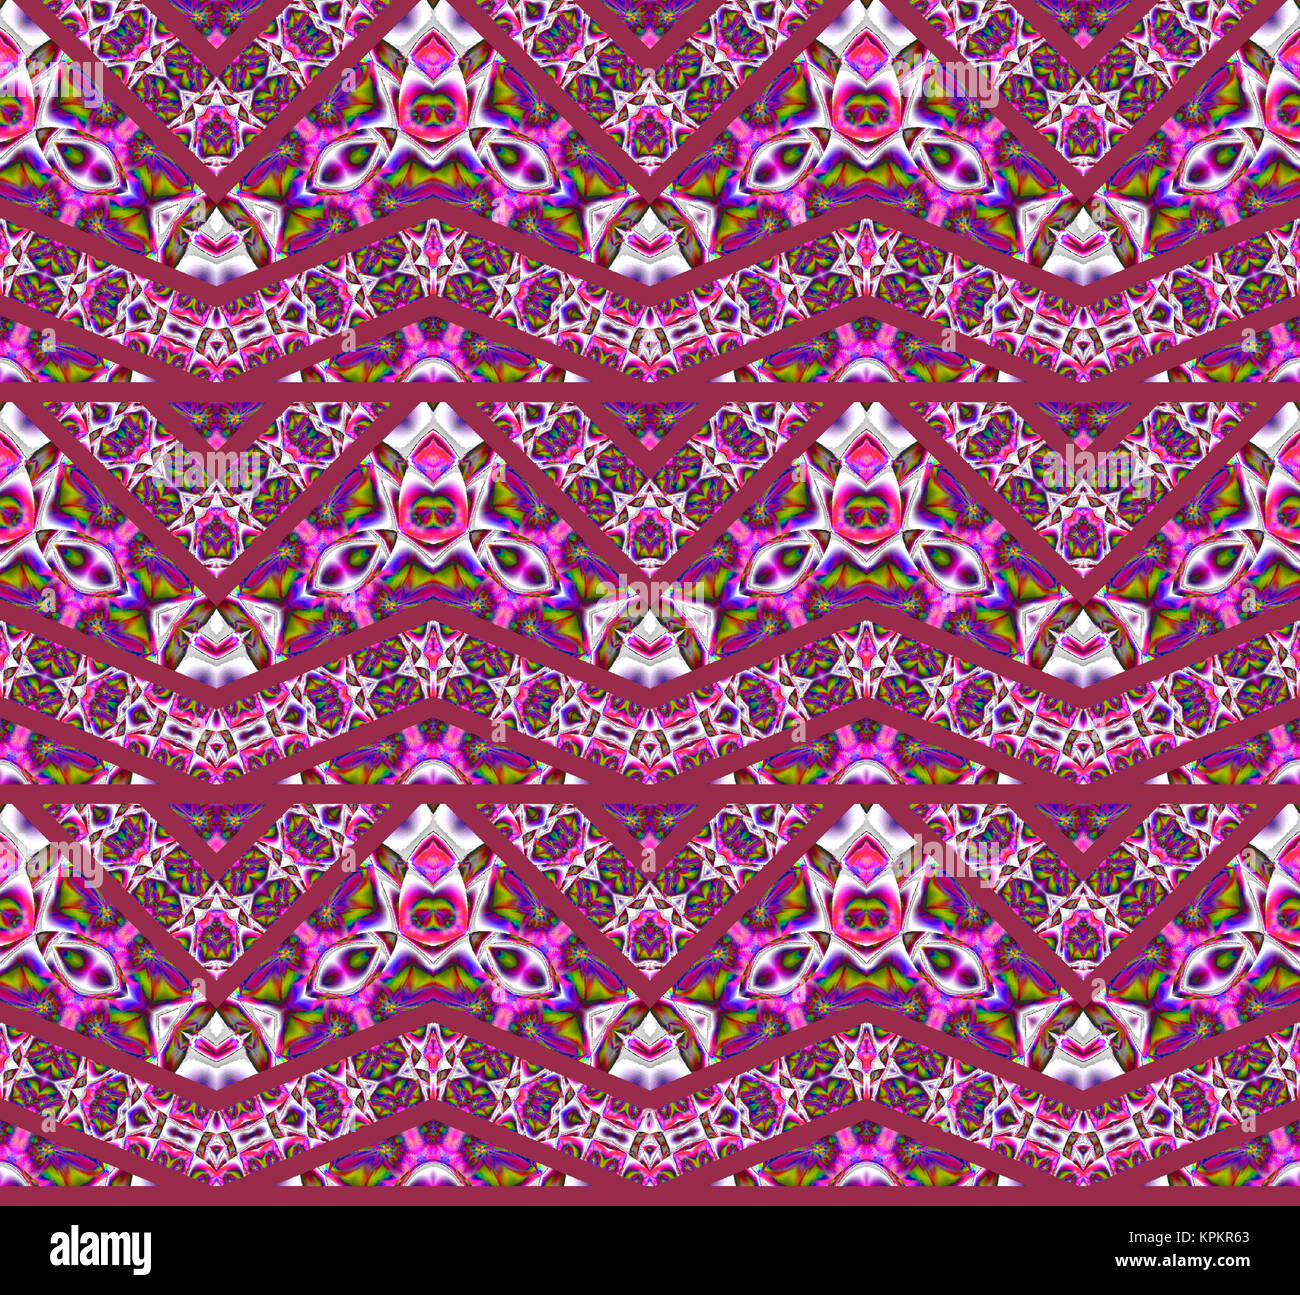 Geométrica abstracta de fondo sin fisuras. Amplios zigzag rojo oscuro con diversos elementos multicolor en rosa, violeta, morado, verde lima y gris claro. Foto de stock